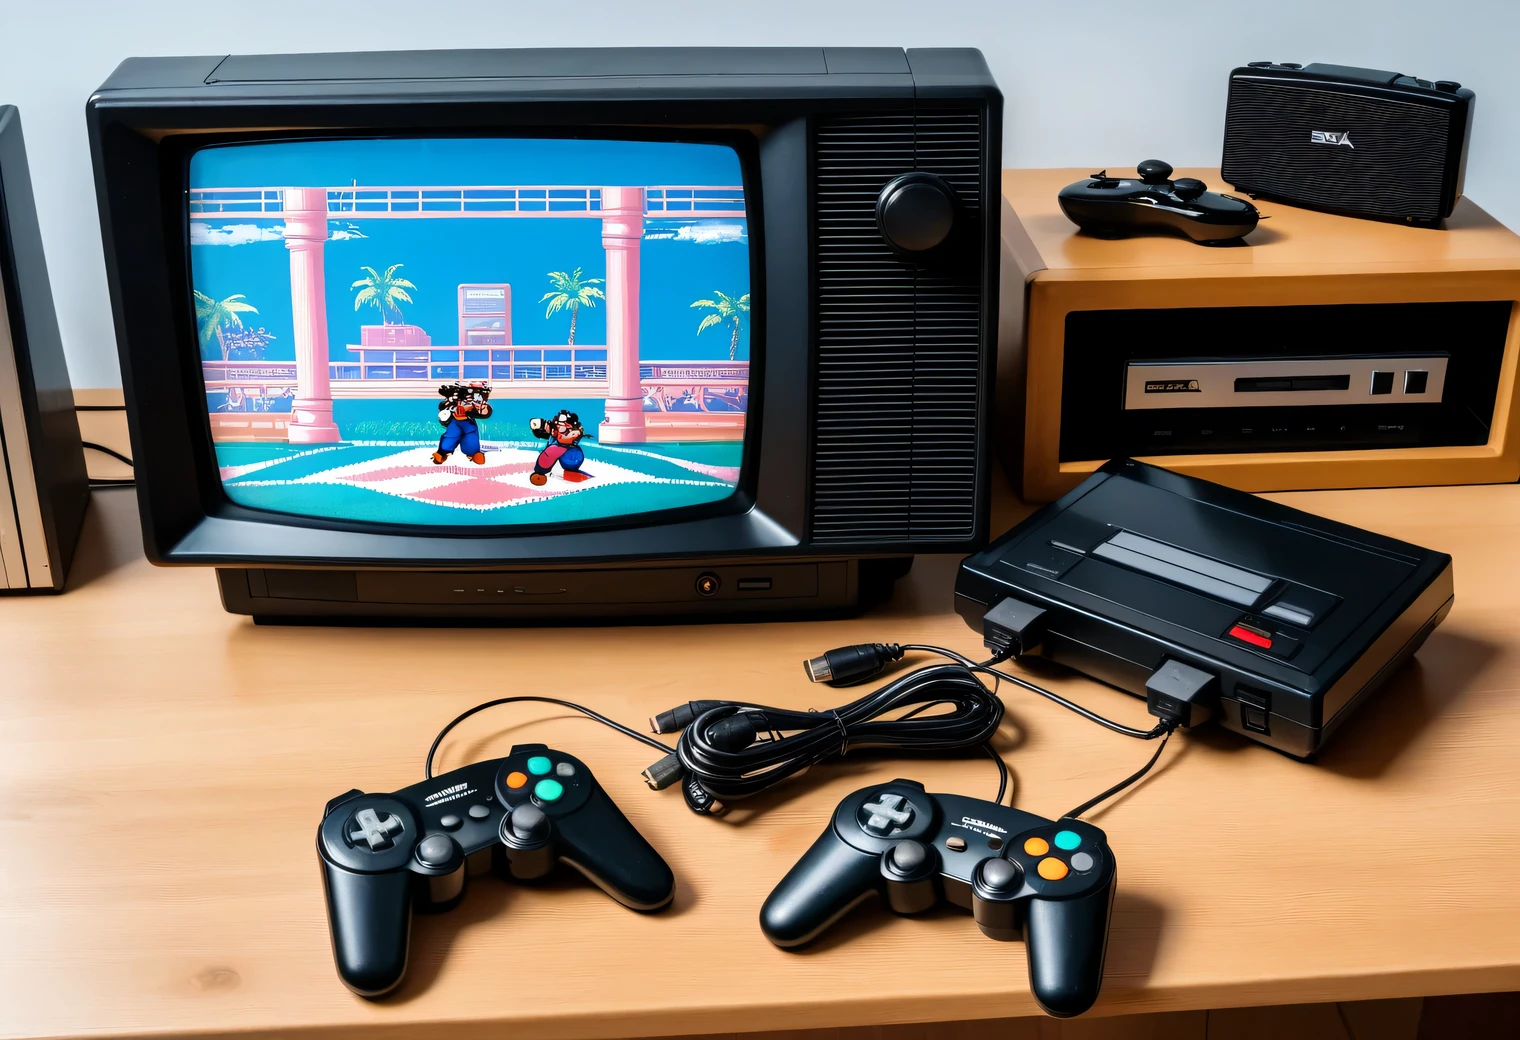 테이블 위에는 레트로 TV와 연결해 레트로 게임을 실행하는 레트로 세가 메가드라이브 게임기가 놓여 있다., 게임패드 2개, 레트로 사진, 진짜, 분명한, 색상, 노스탤지어, 1993